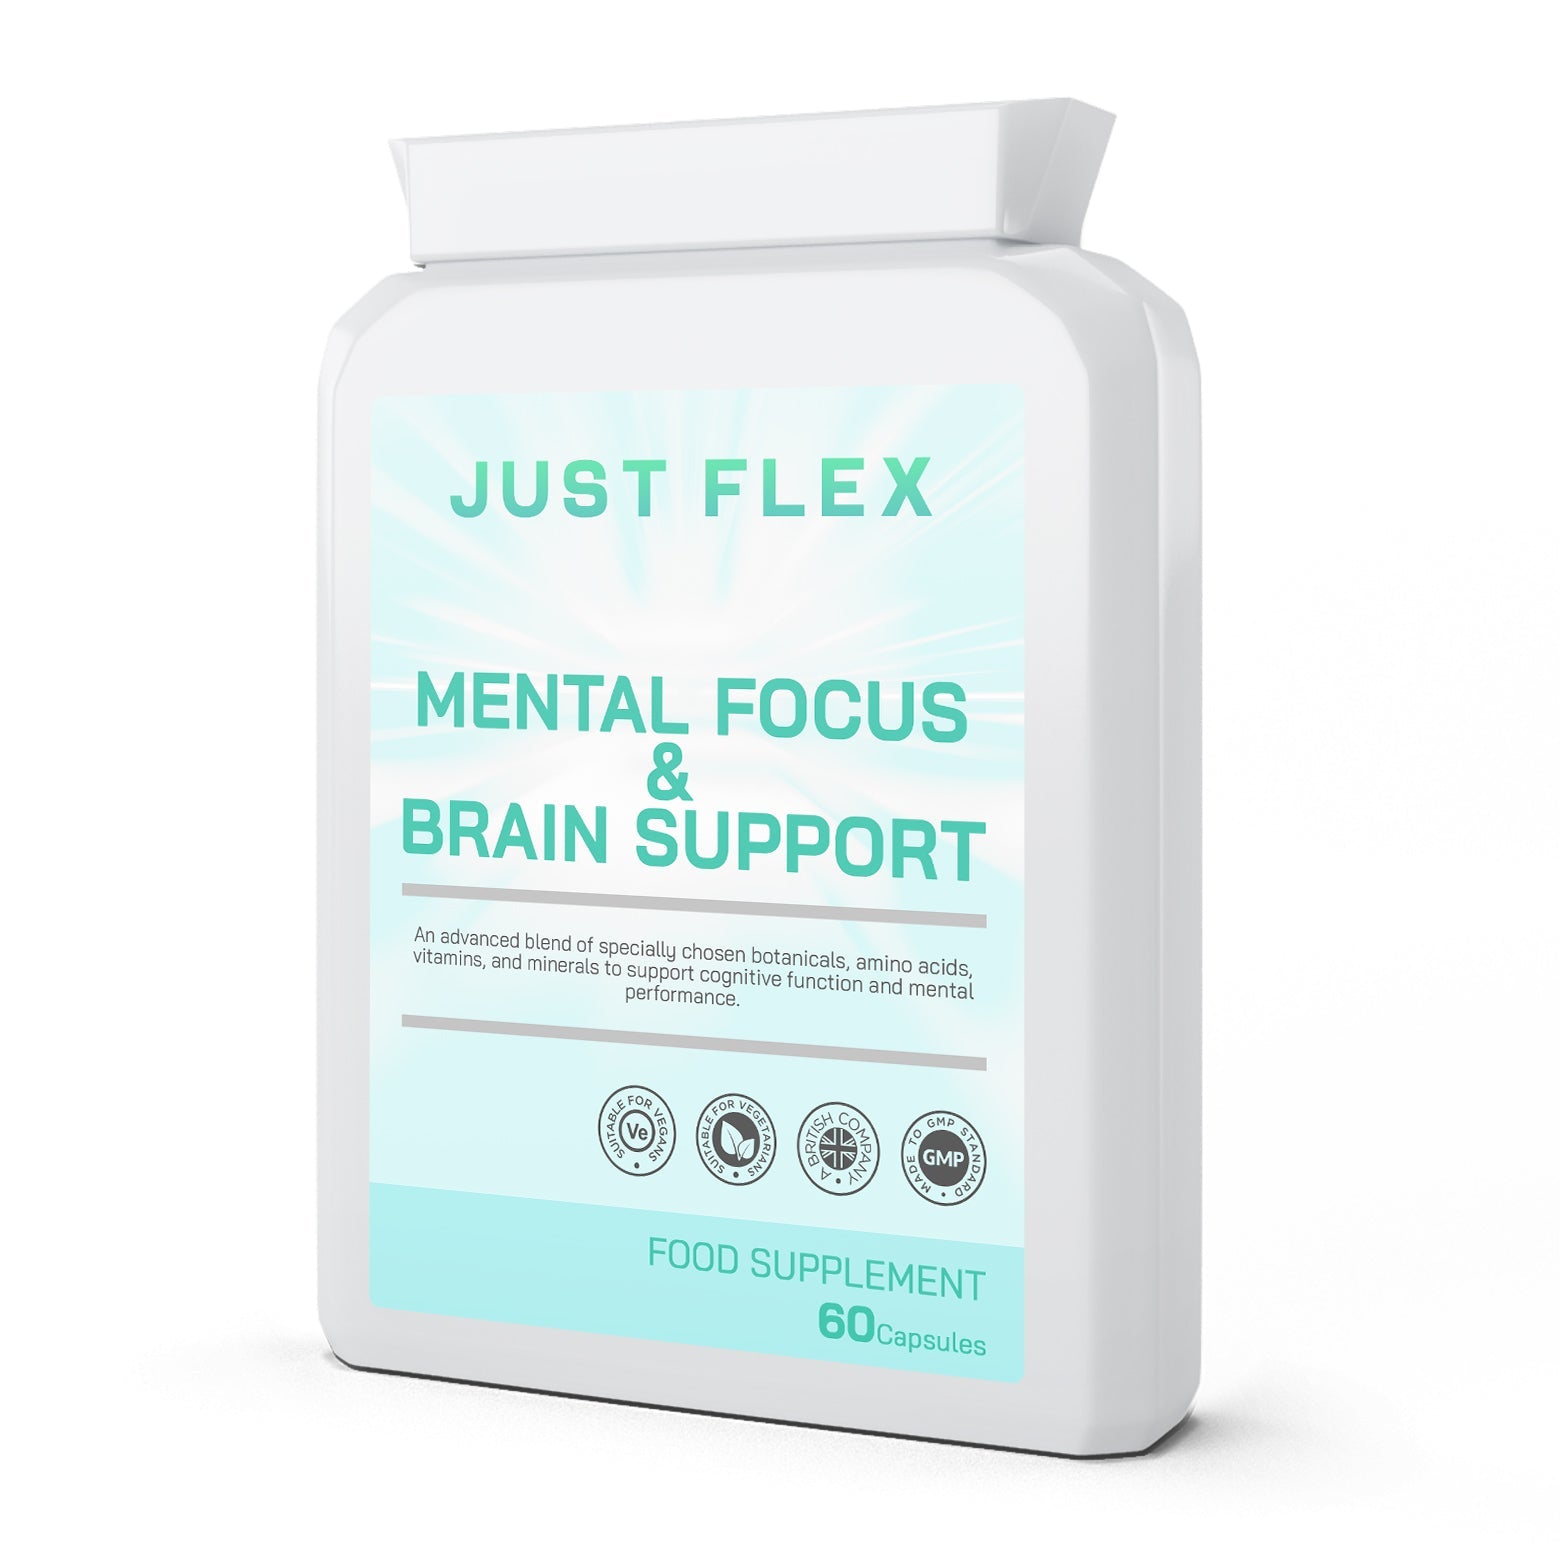 Just Flex Mental Focus Brain Support 60 Capsules - Just Flex